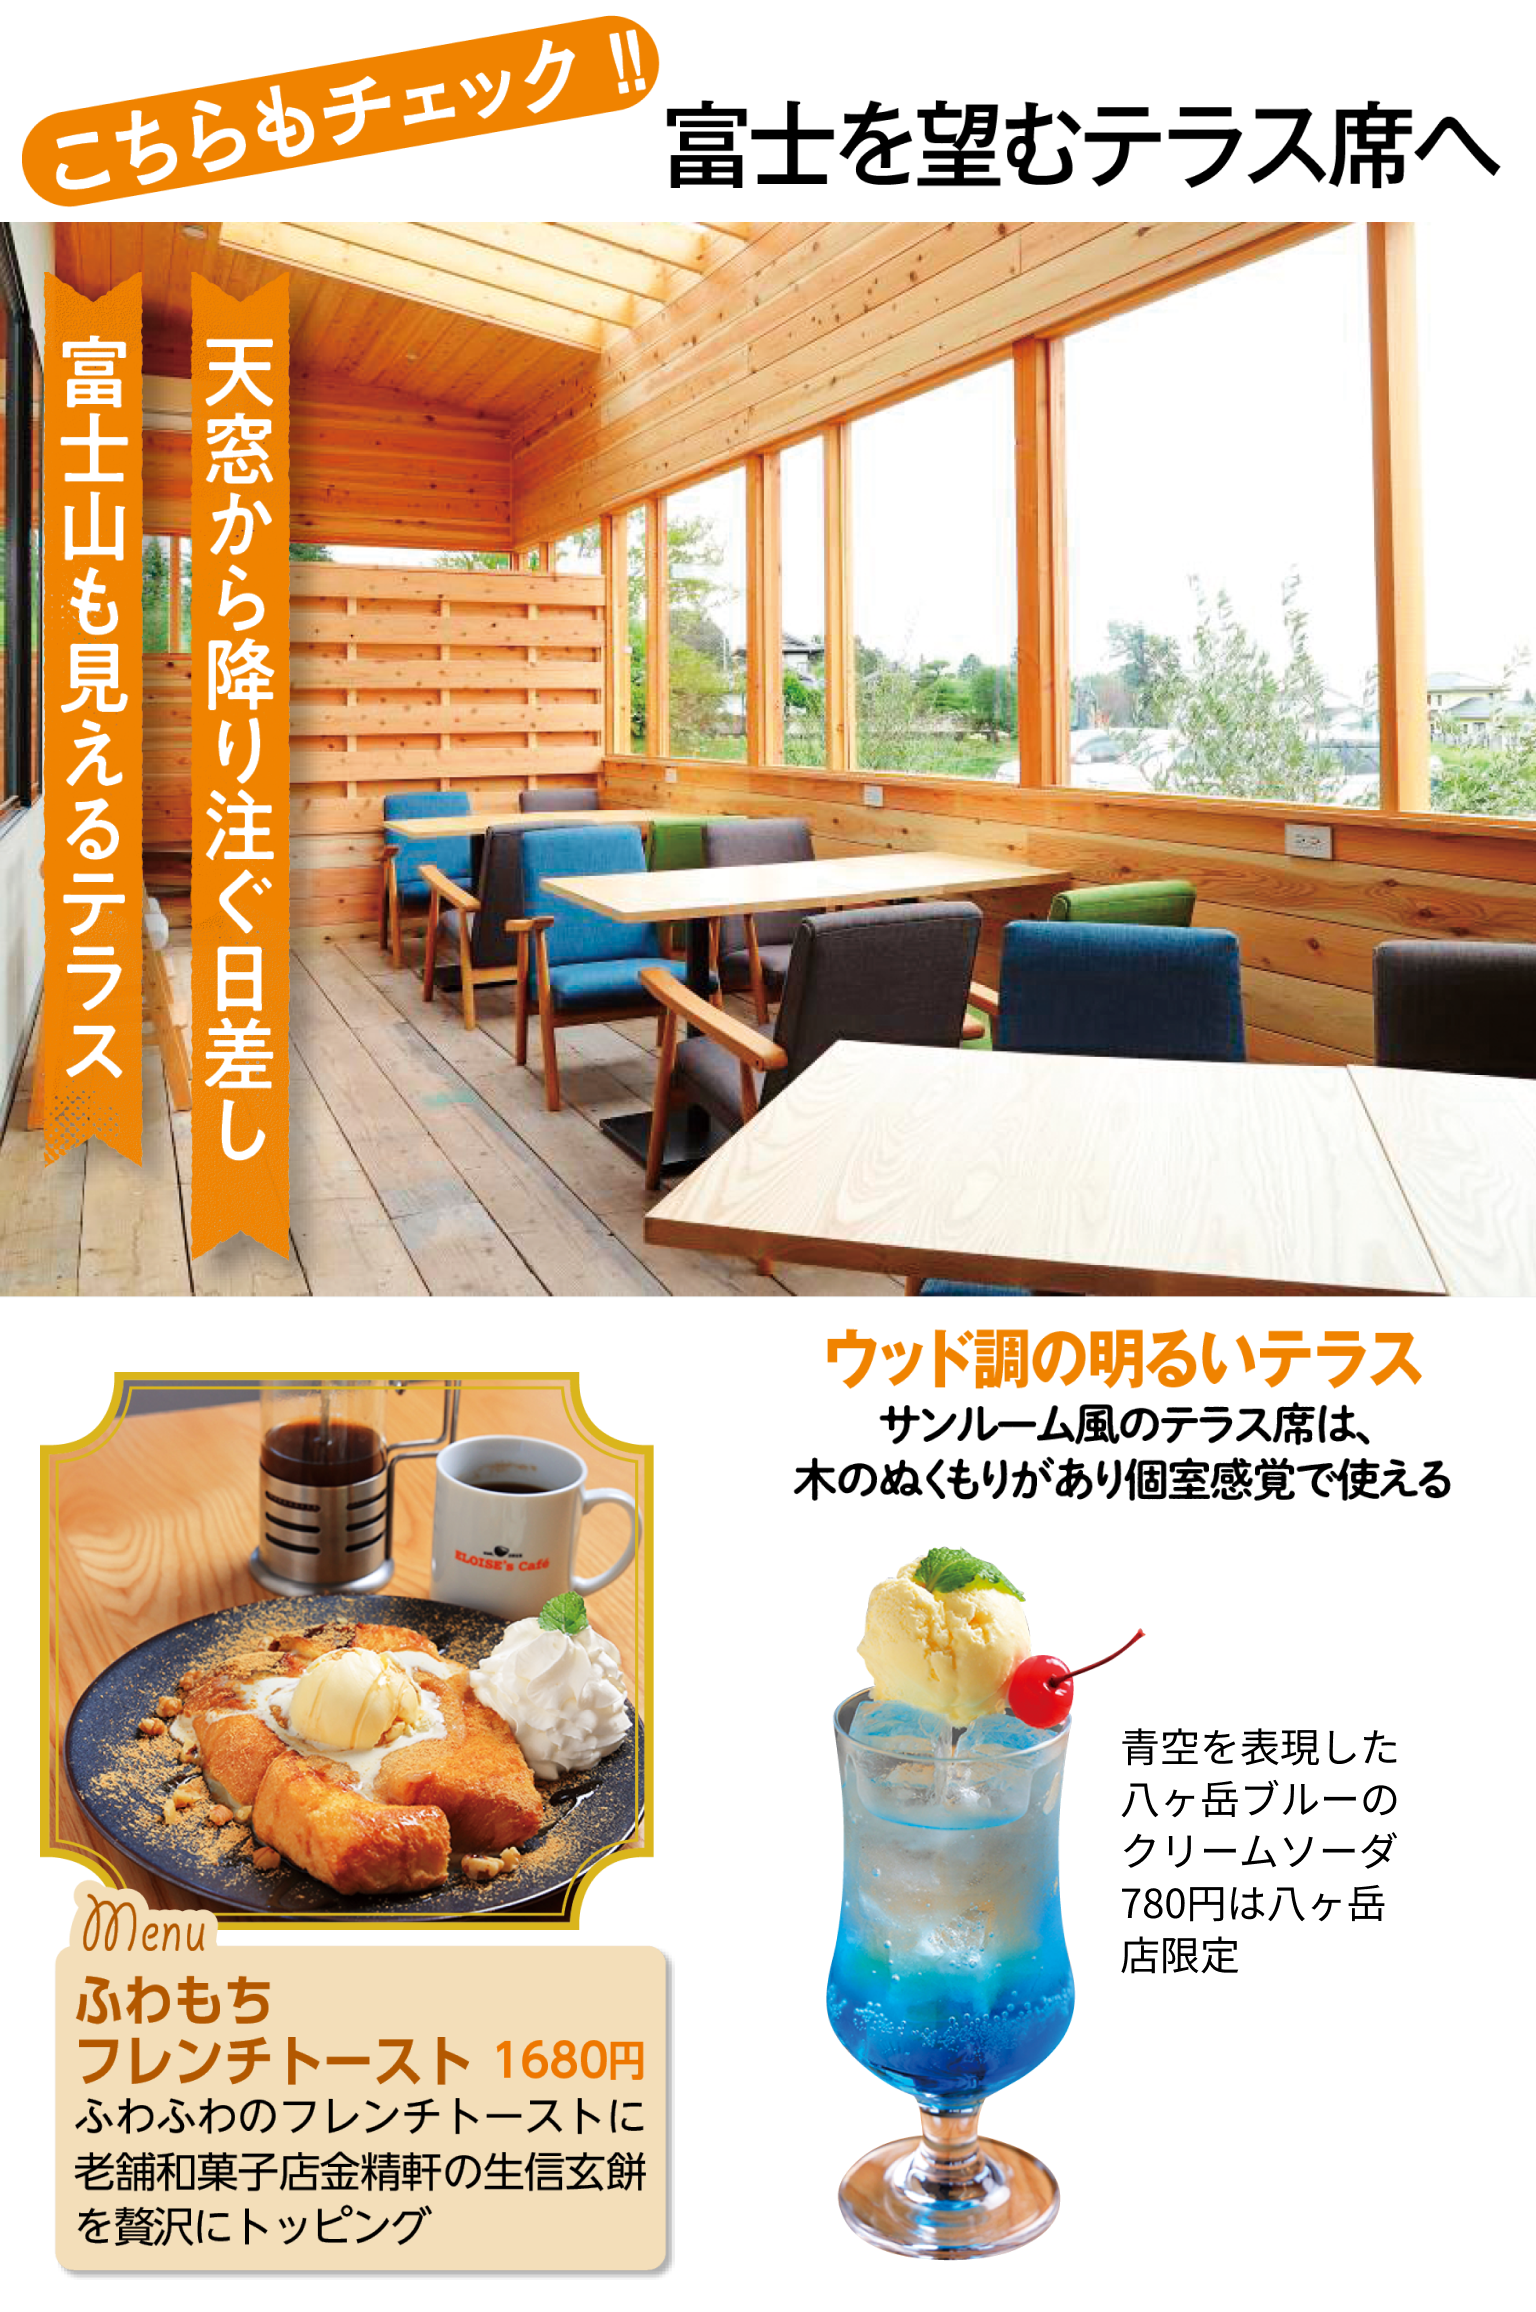 ELOISE's Café 八ヶ岳店